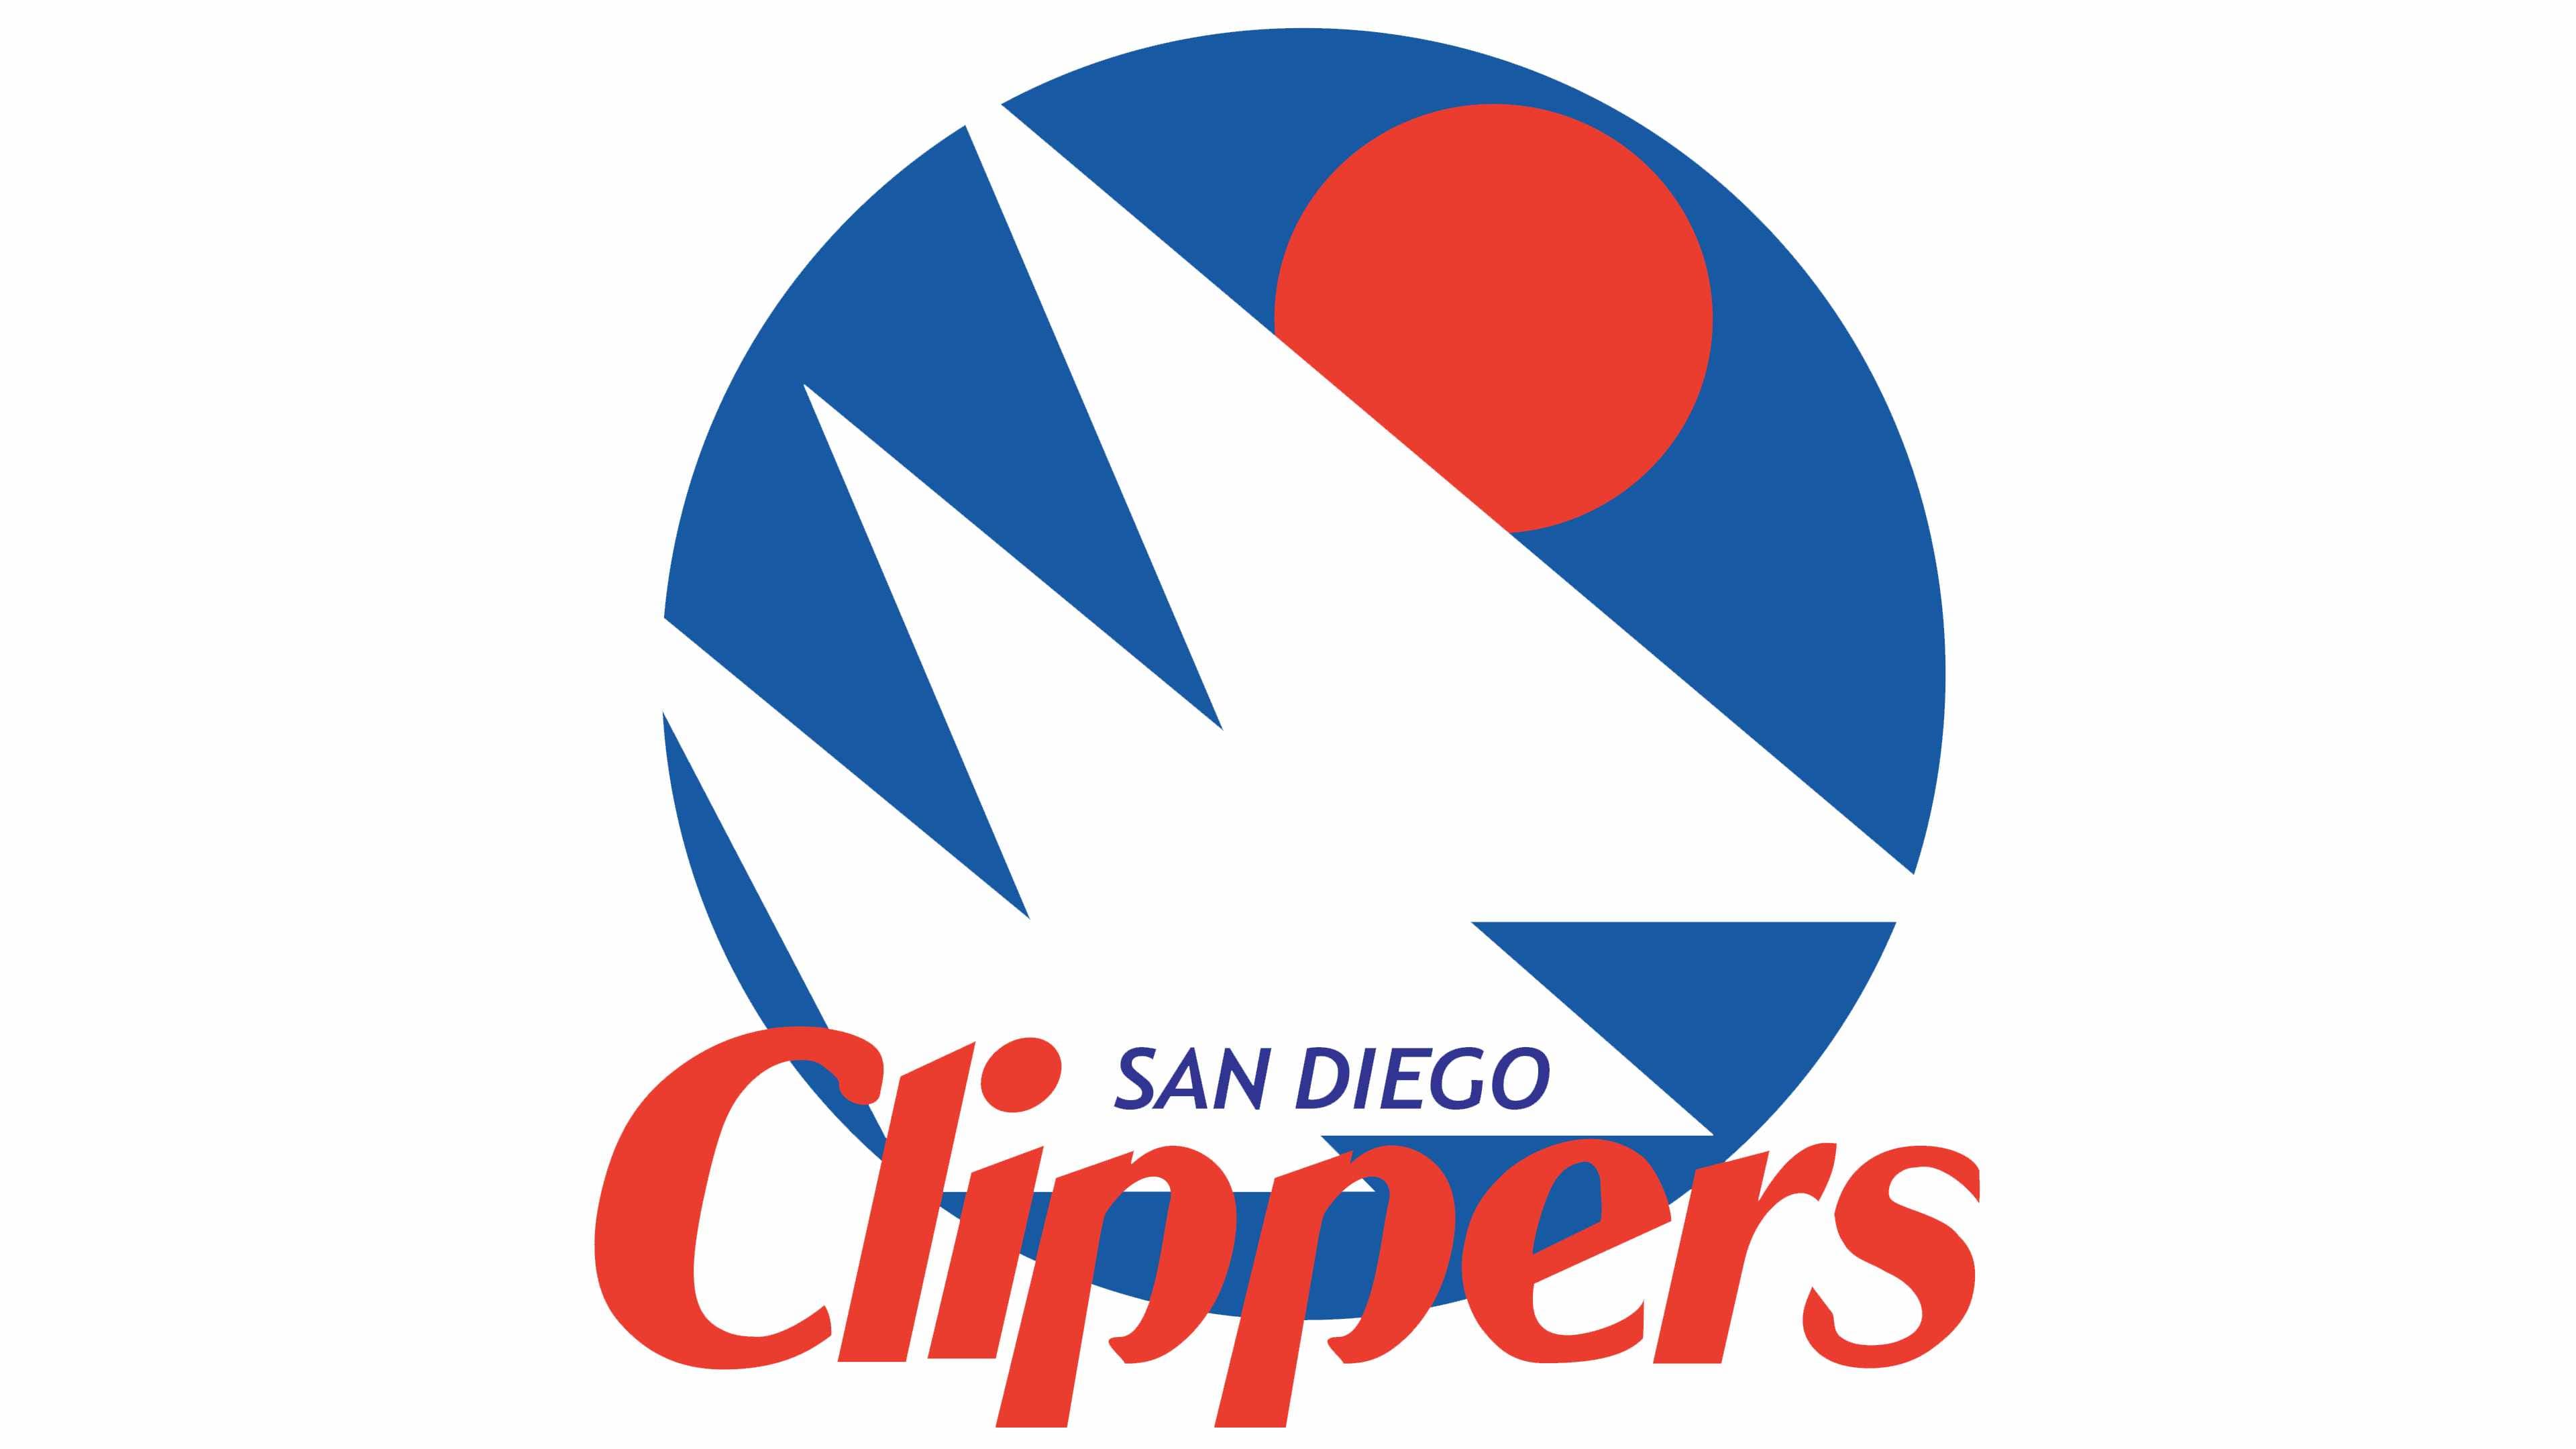 Los Angeles Clippers History - Team Origins, Logos & Jerseys